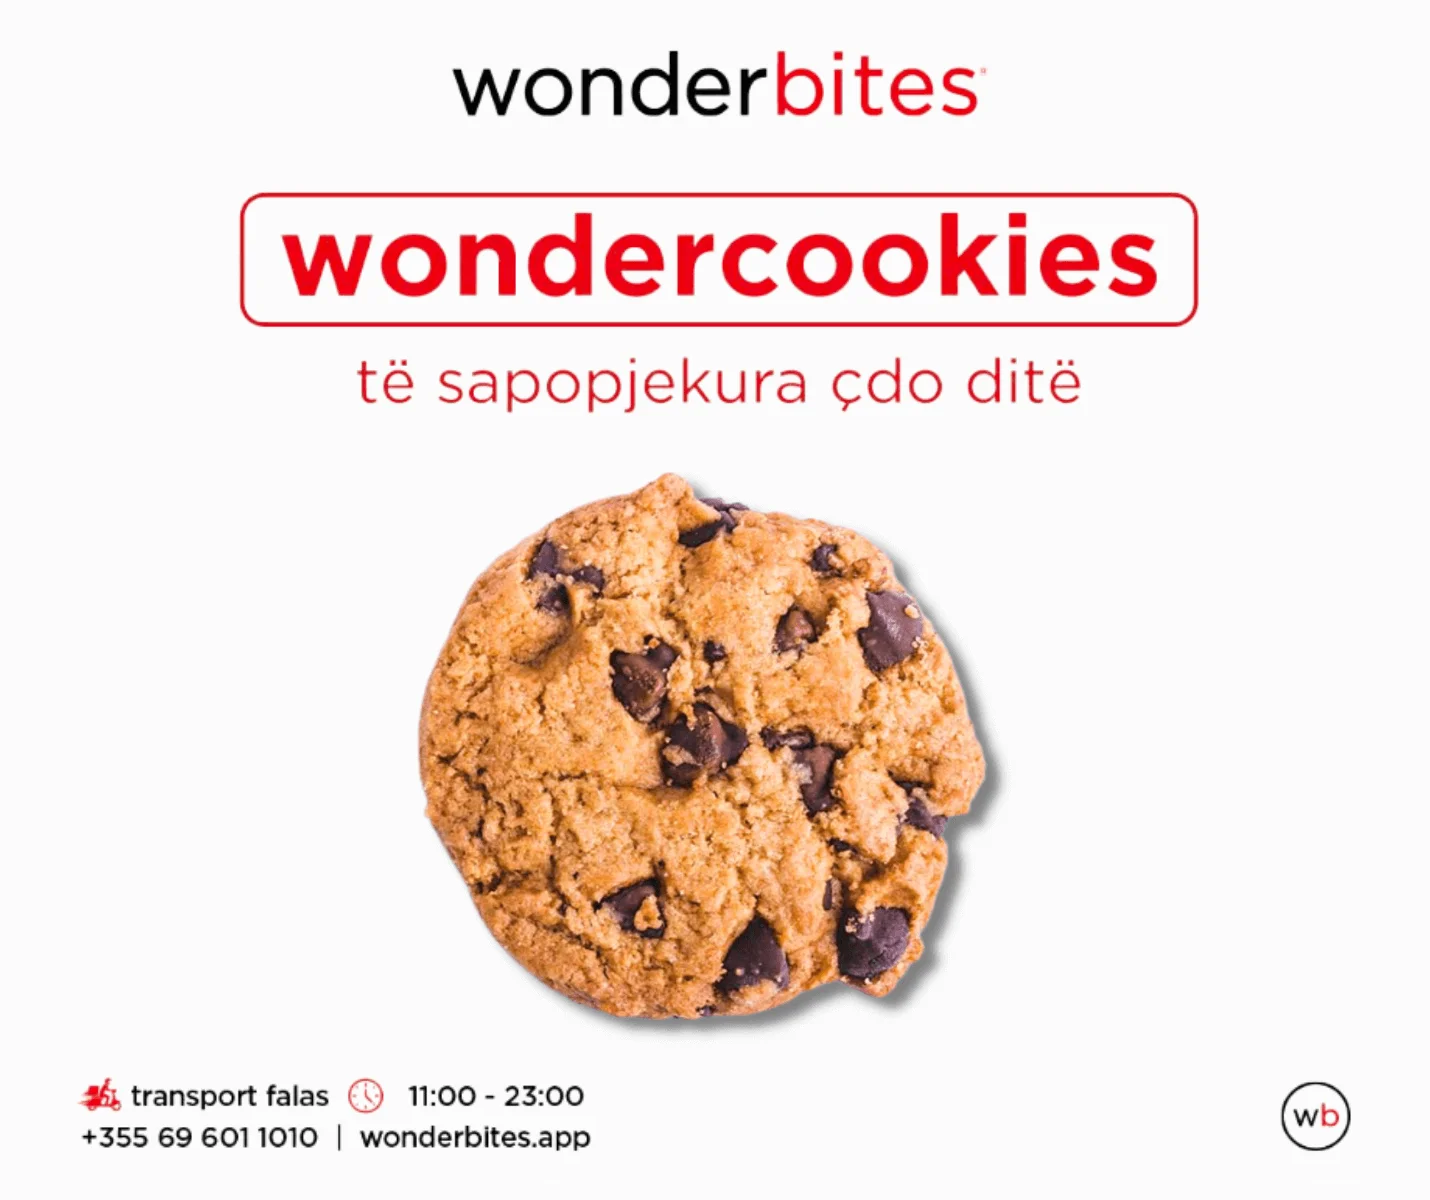 Wondercookies